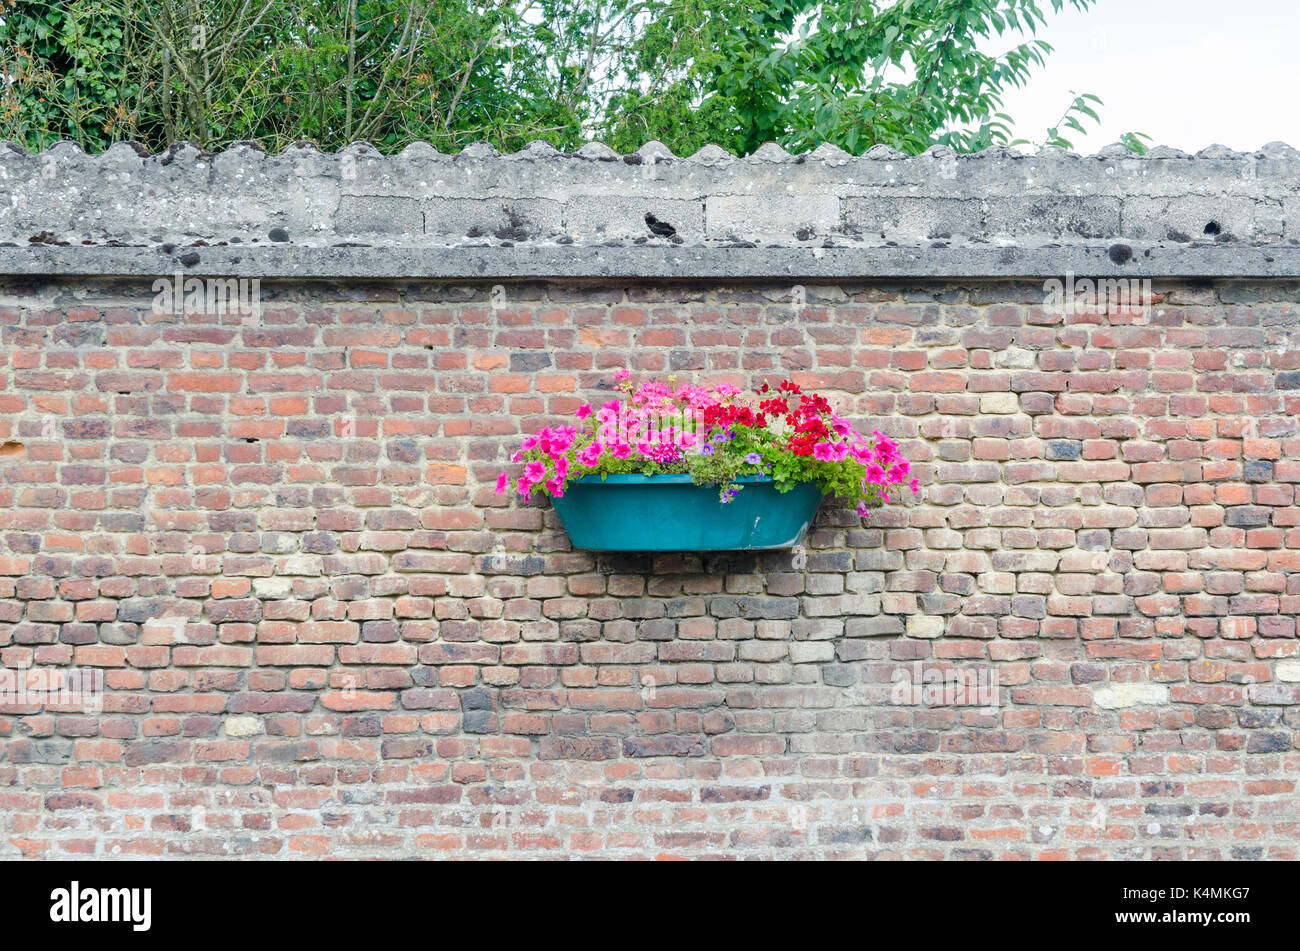 Rosa e rosso dei gerani in una parete del cestello montato su di un muro di mattoni in una cittadina francese Foto Stock